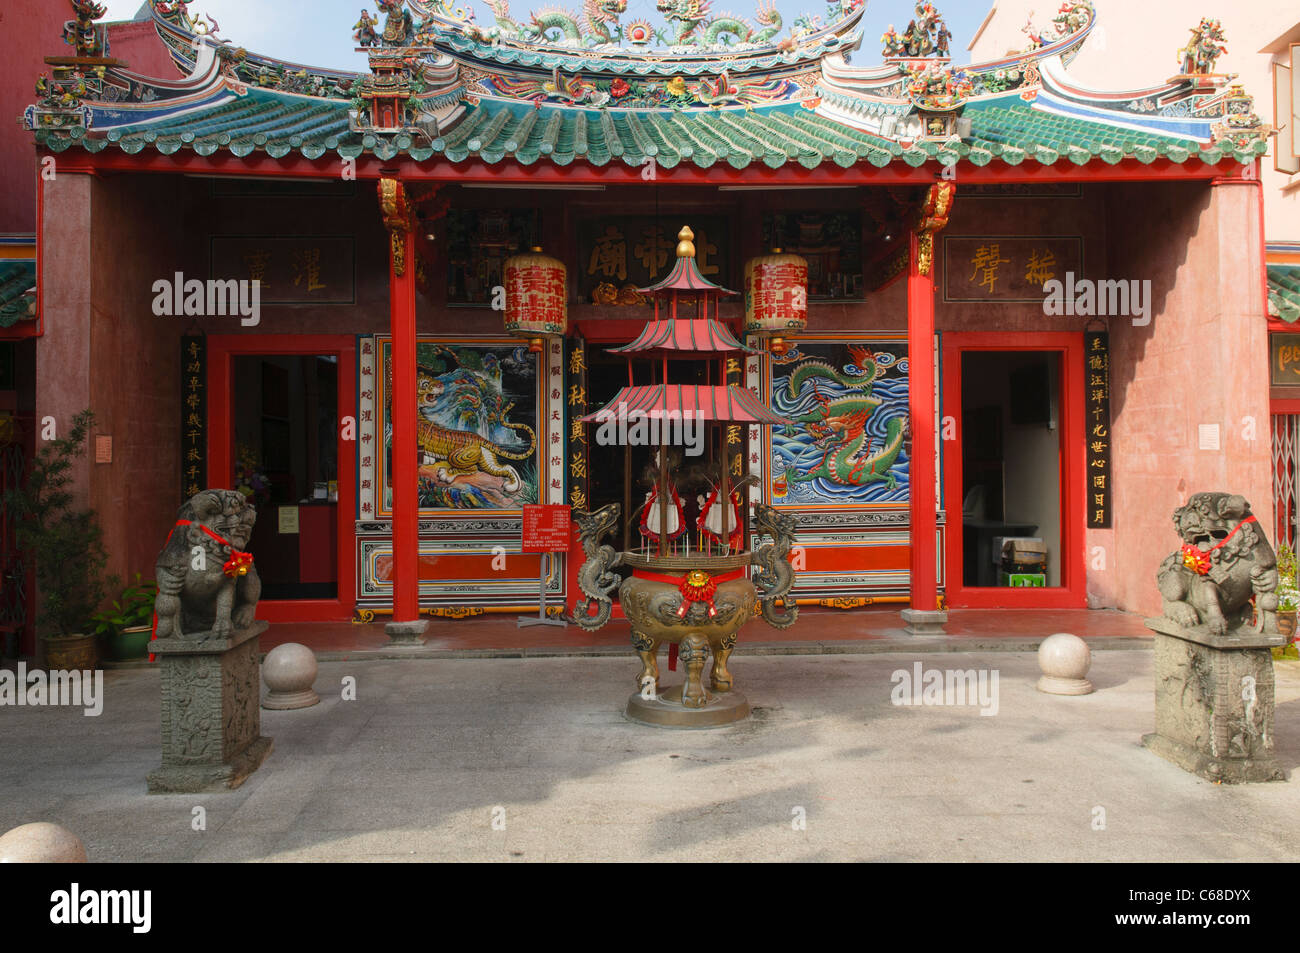 Tua Pek Kong Chinese Temple in Kuching in Sarawak, Borneo, Malaysia Stock Photo